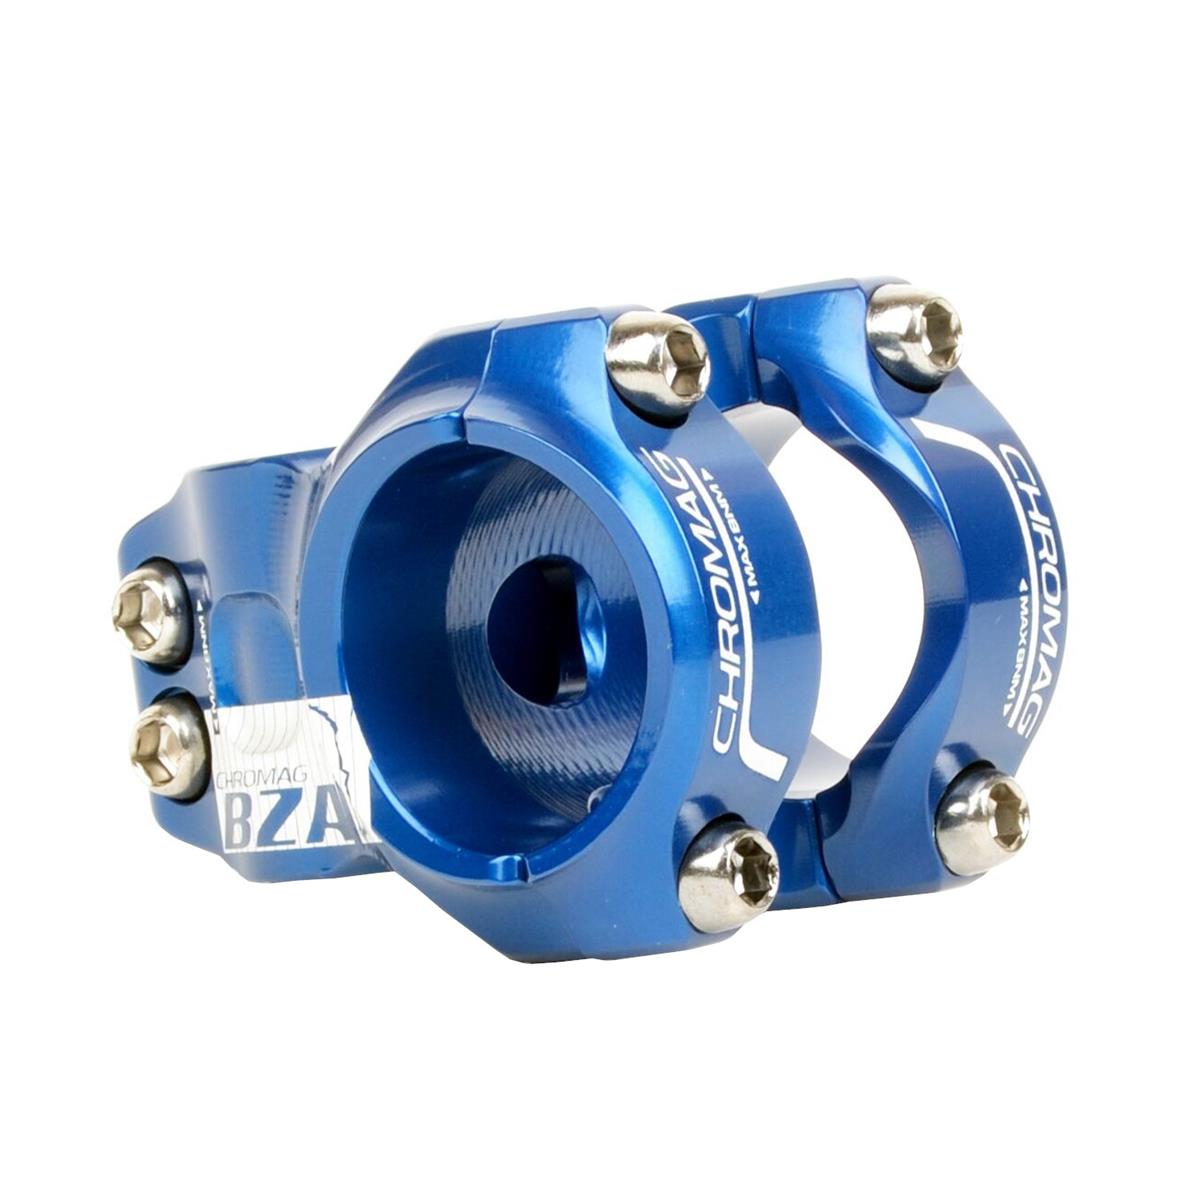 Chromag Attacco Manubrio MTB BZA 35 35.0 mm, 35 mm Reach, Blu